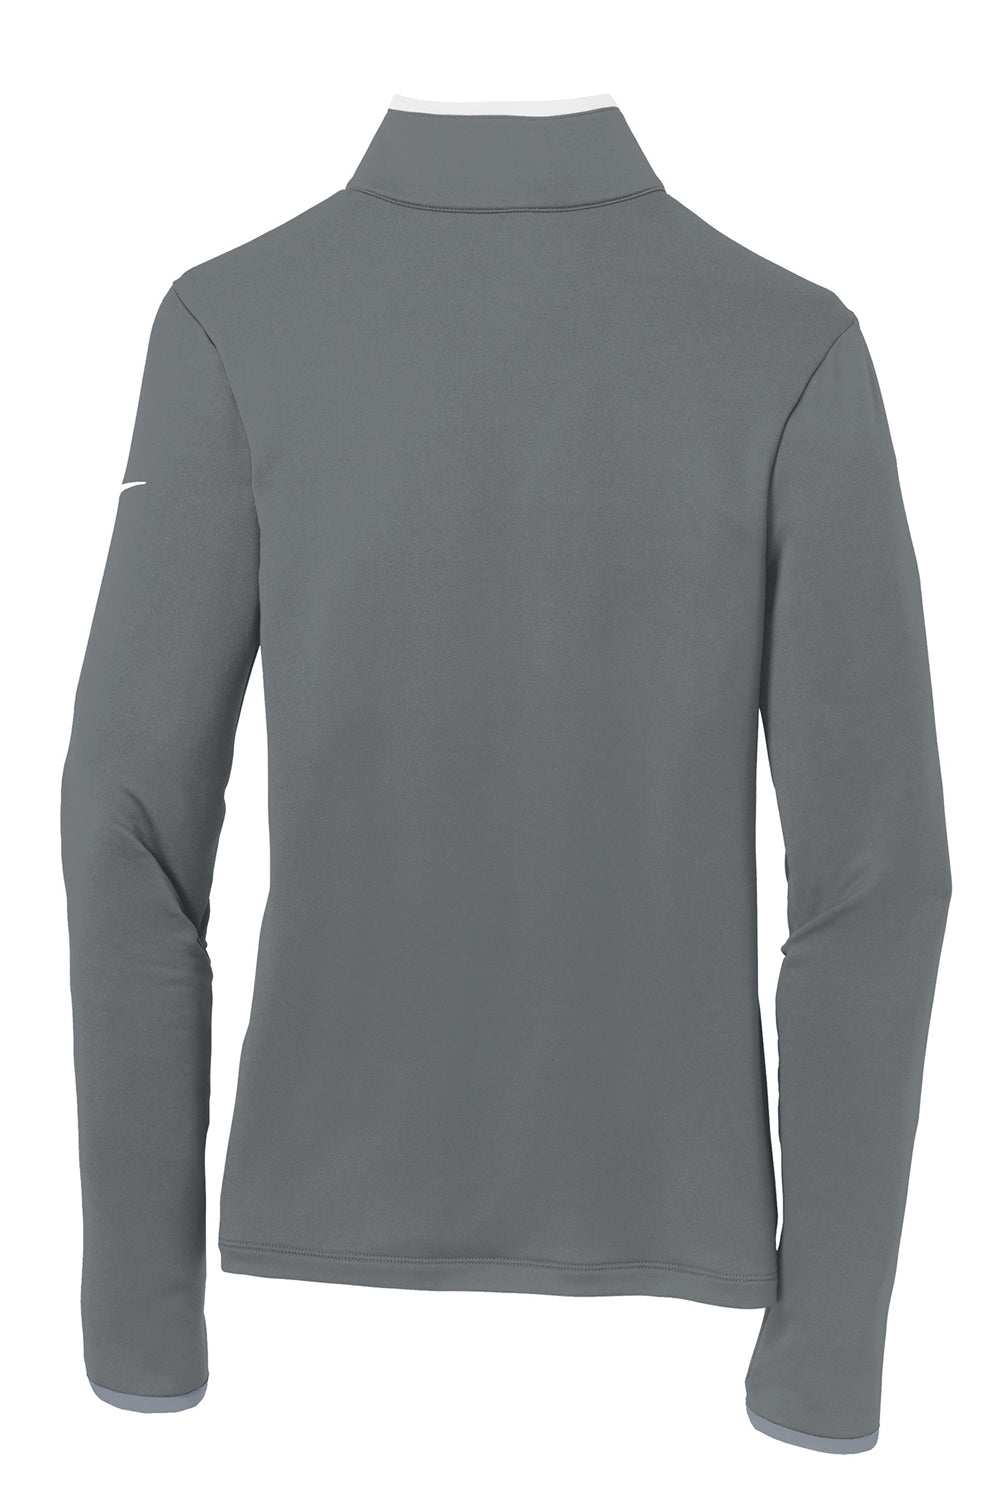 Nike 779796 Womens Dri-Fit Moisture Wicking 1/4 Zip Sweatshirt Dark Grey/White Flat Back